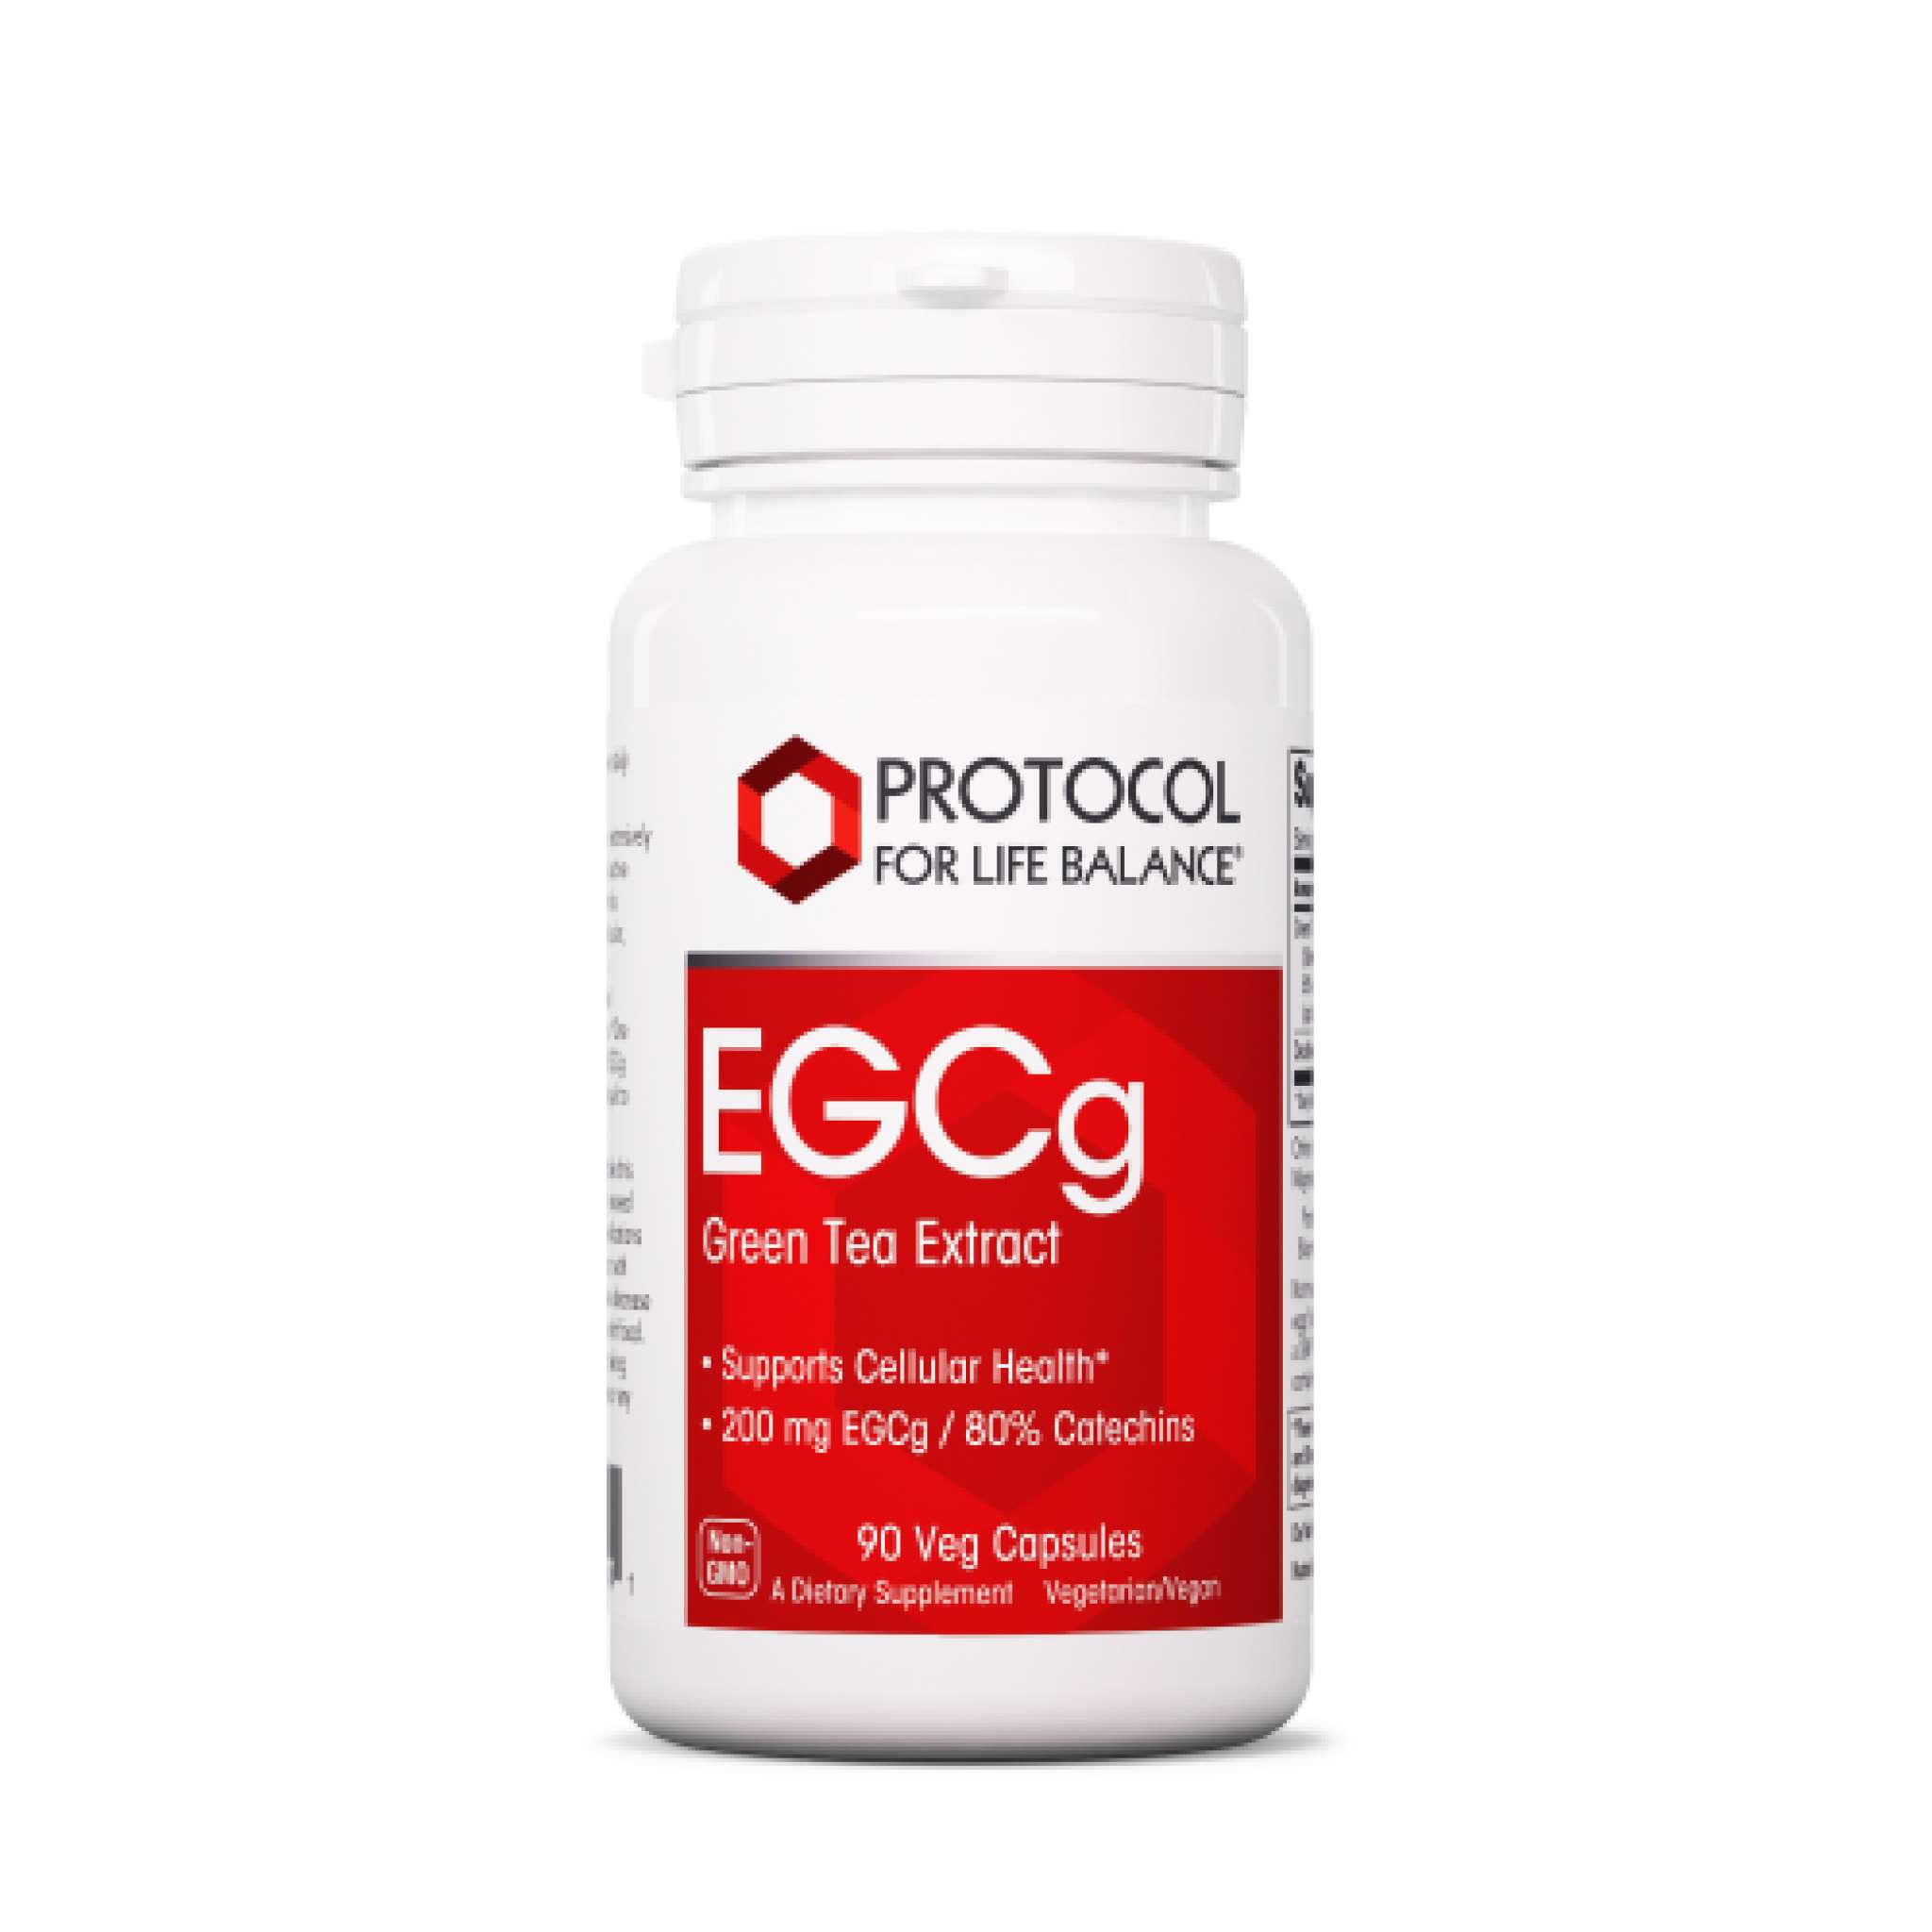 Protocol For Life Balance - Egcg 400 mg